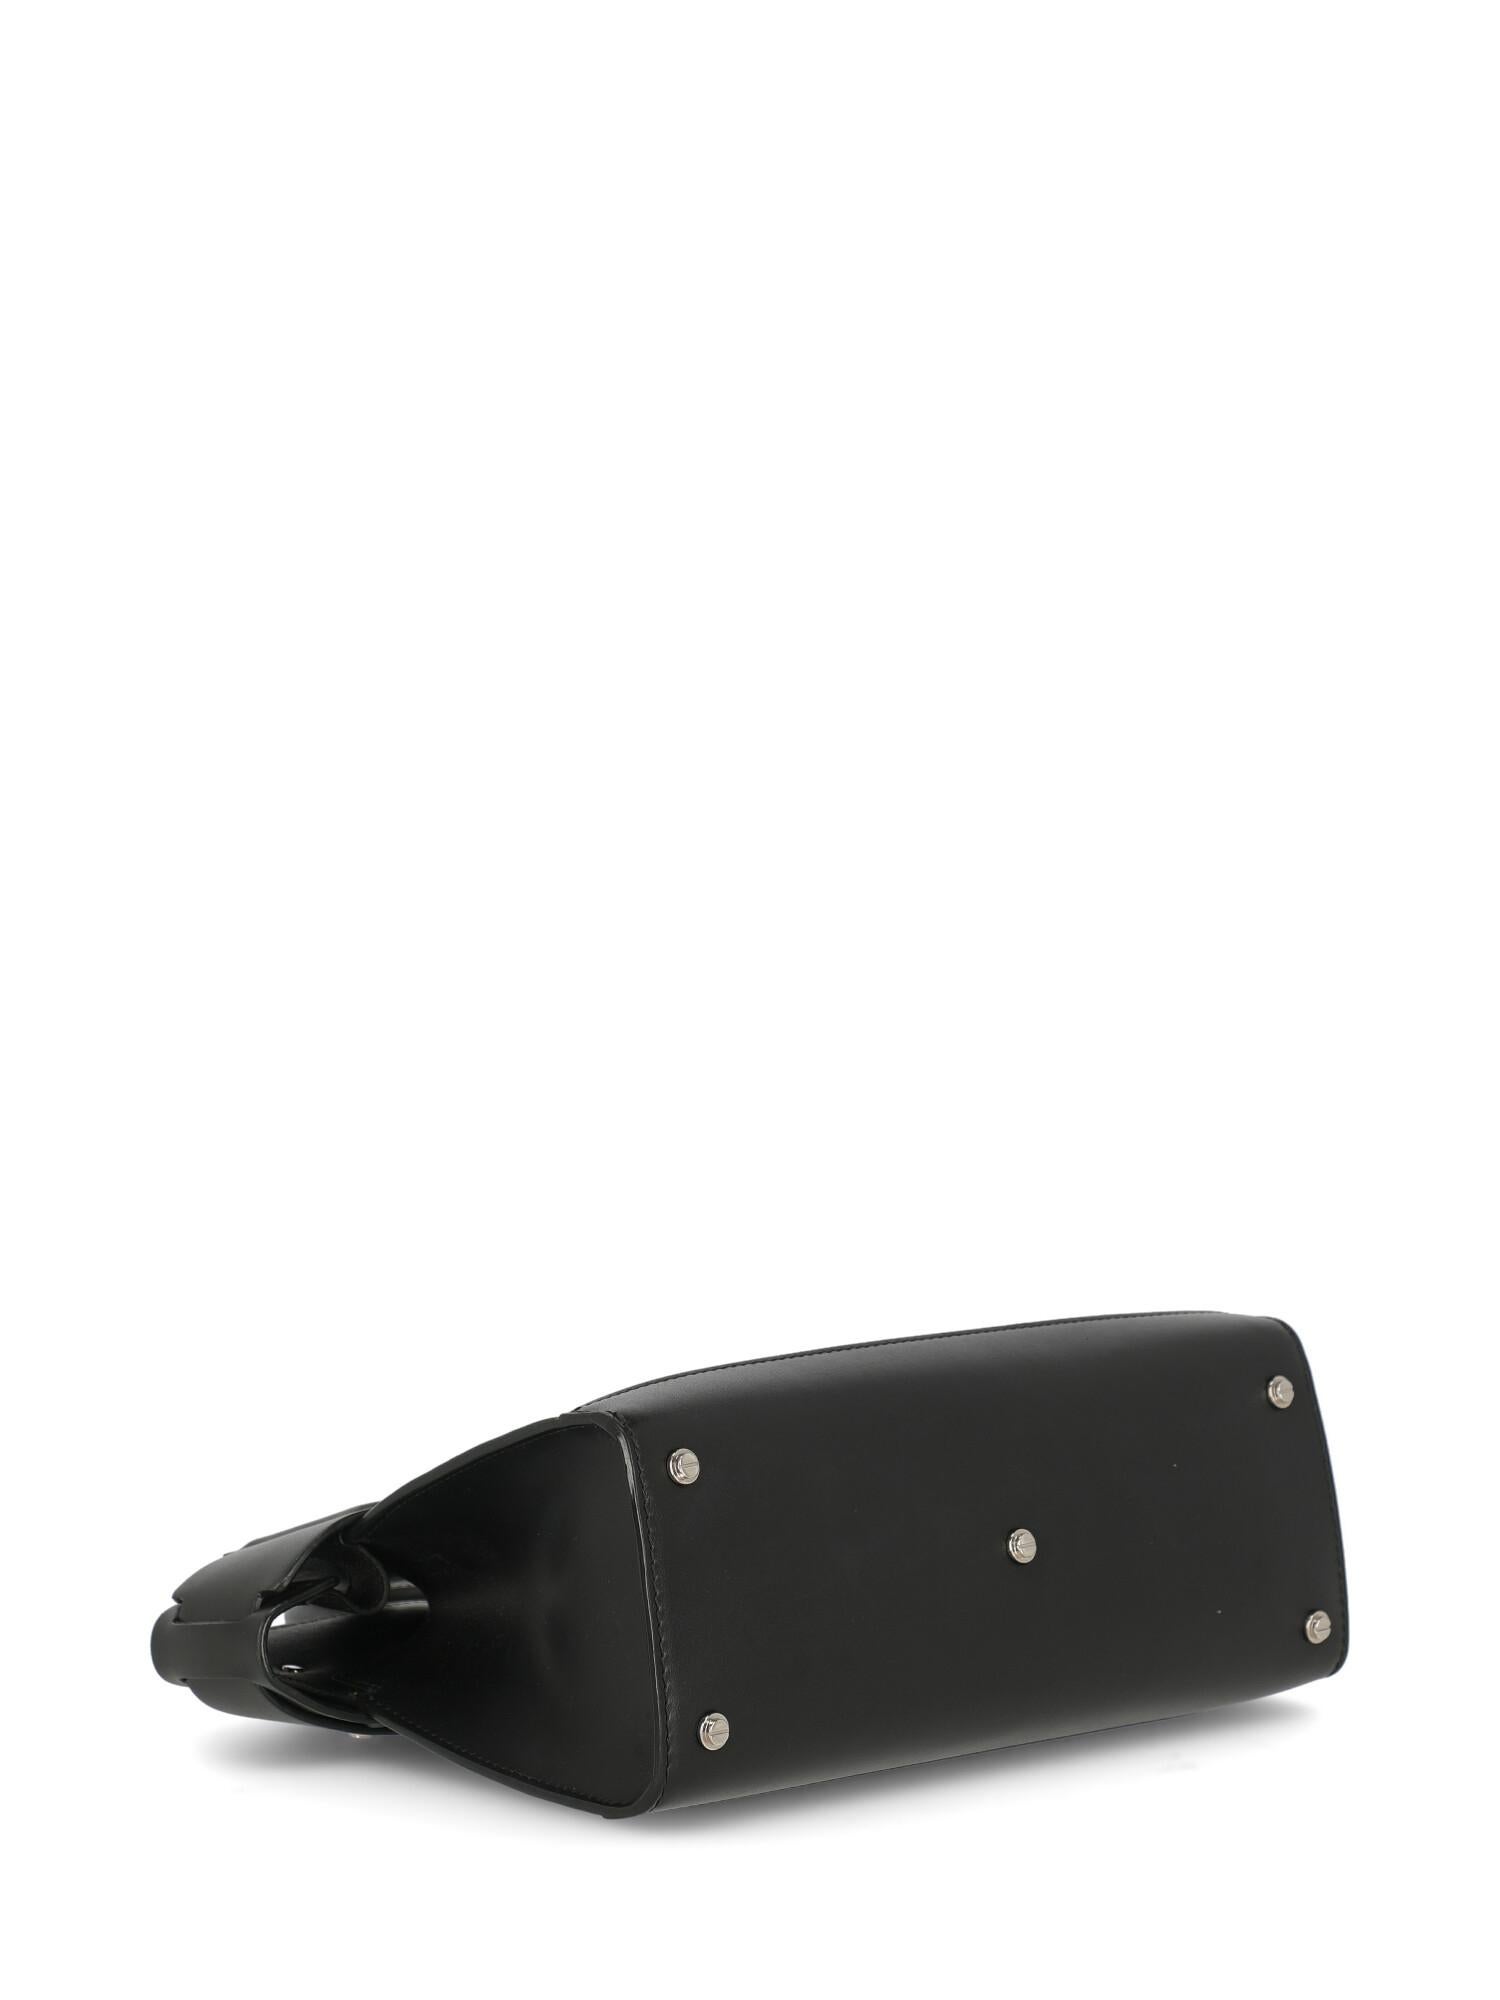 Givenchy Woman Handbag Horizon Black Leather For Sale 1